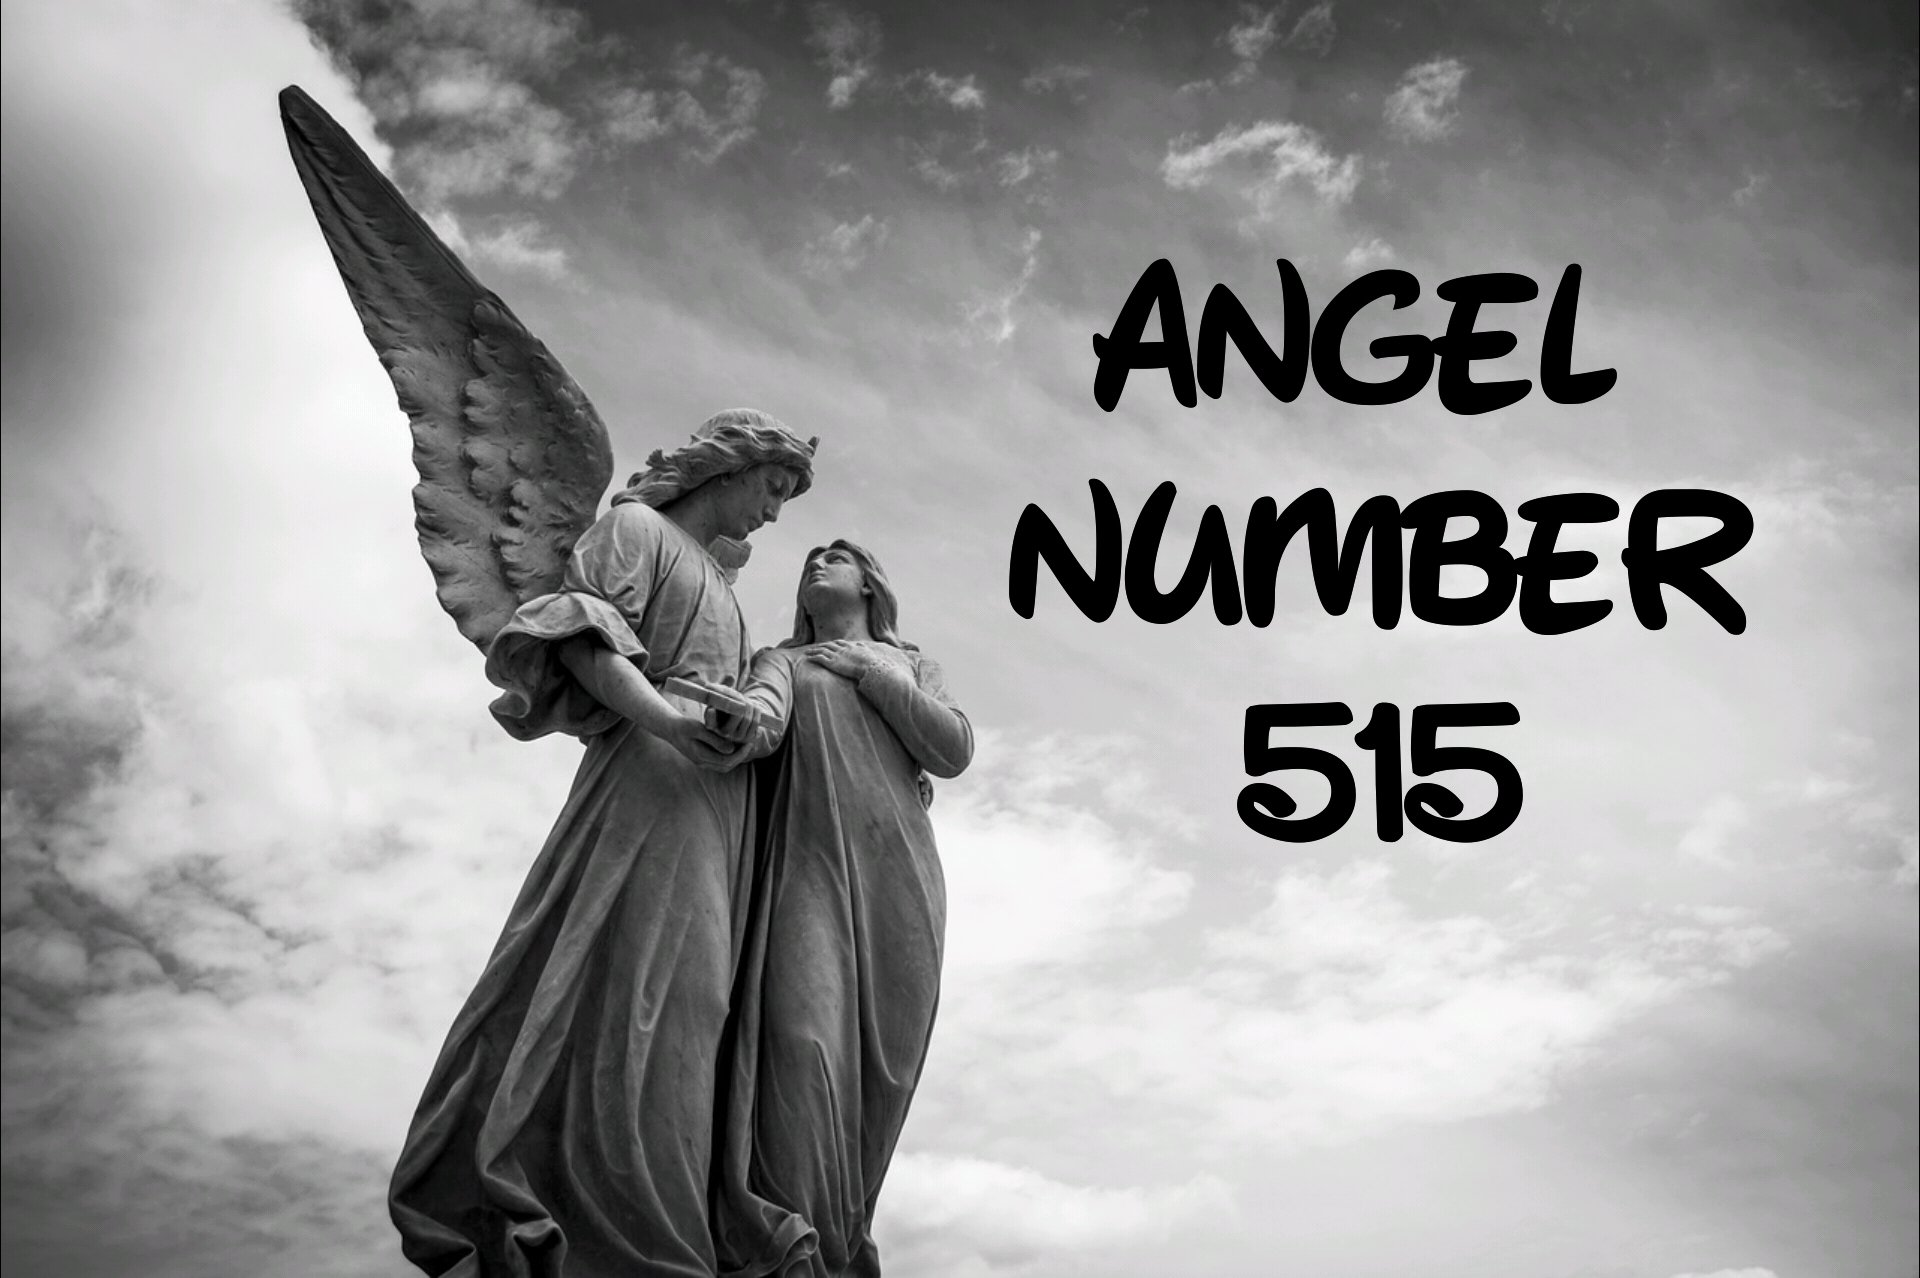 Angel Number 515